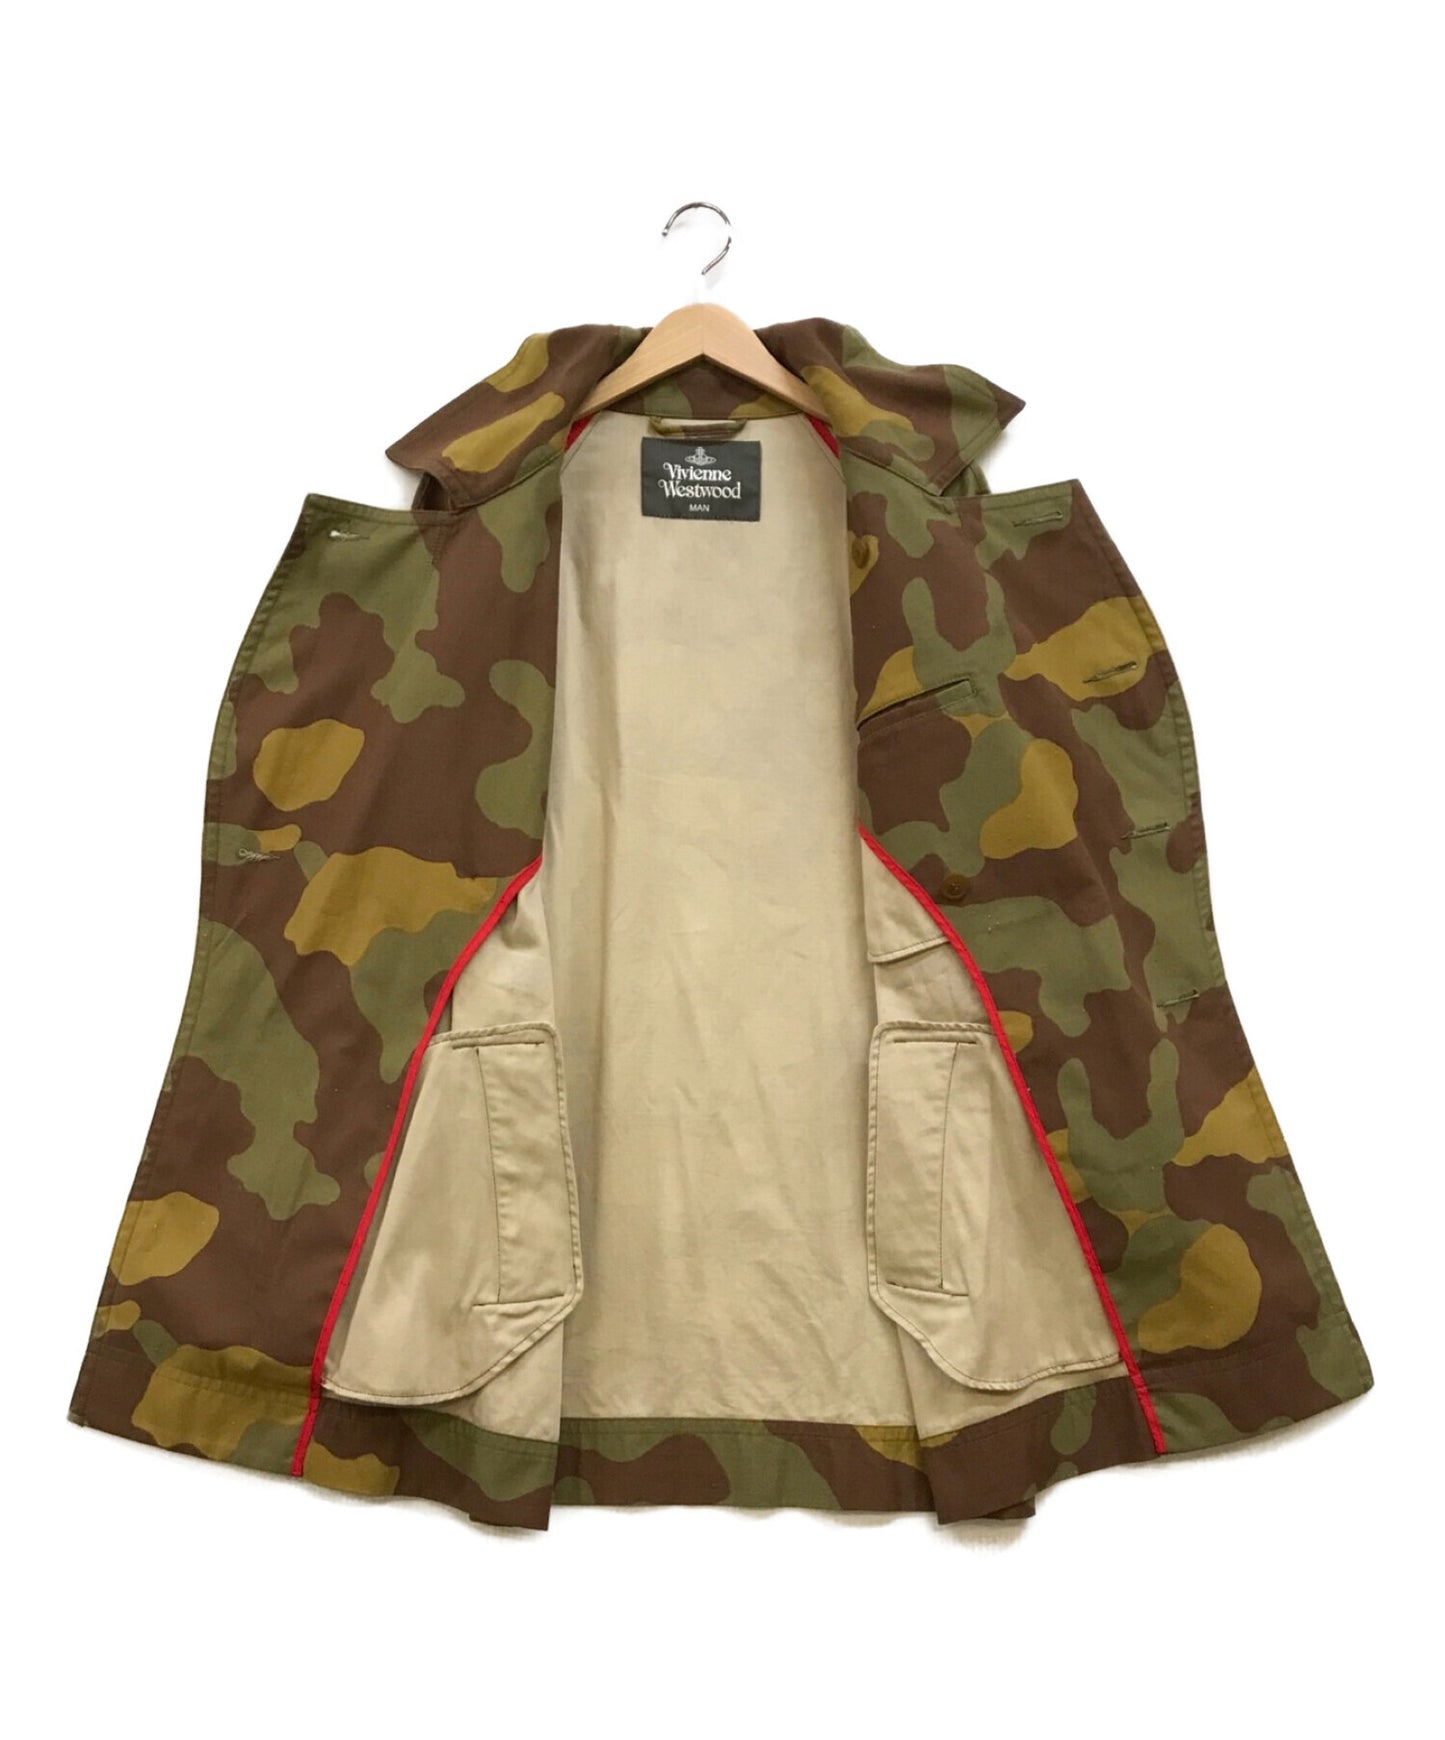 Vivienne Westwood Man 기후 혁명 군용 P 코트 긴 재킷